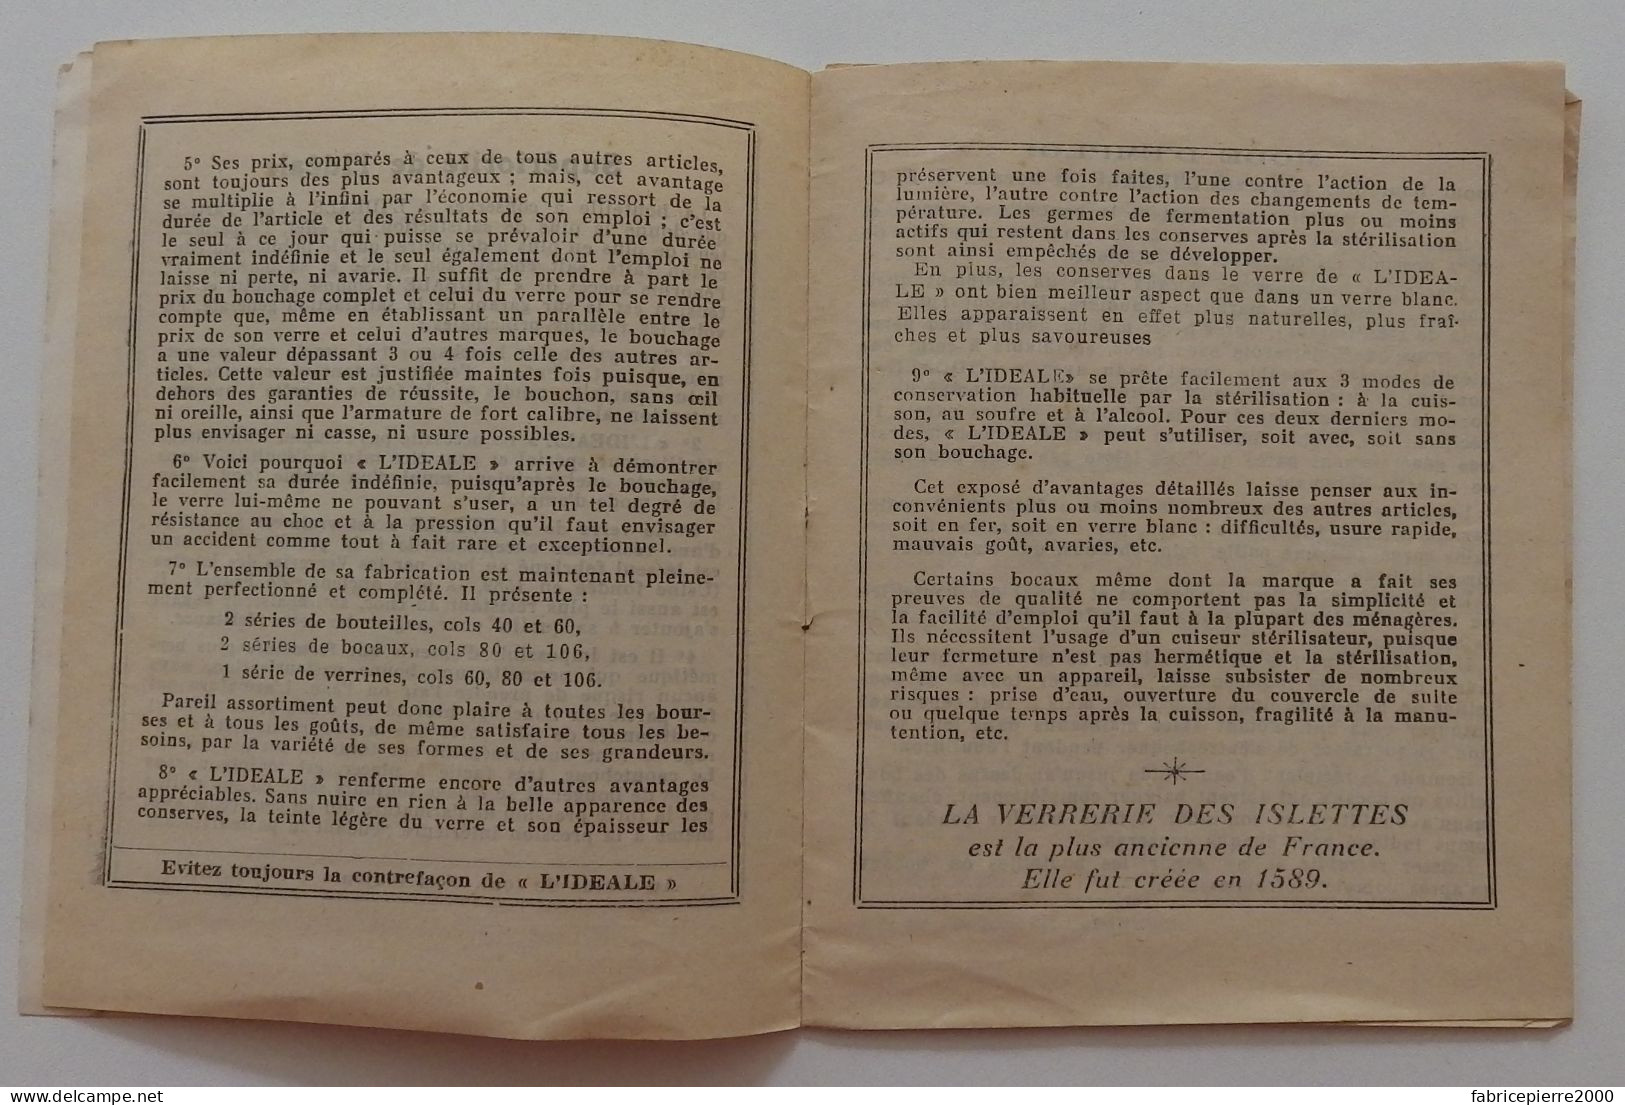 VERRERIE DES ISLETTES - L'Idéale - Carnet De Recettes 1950-1960 BON ETAT Meuse - Werbung